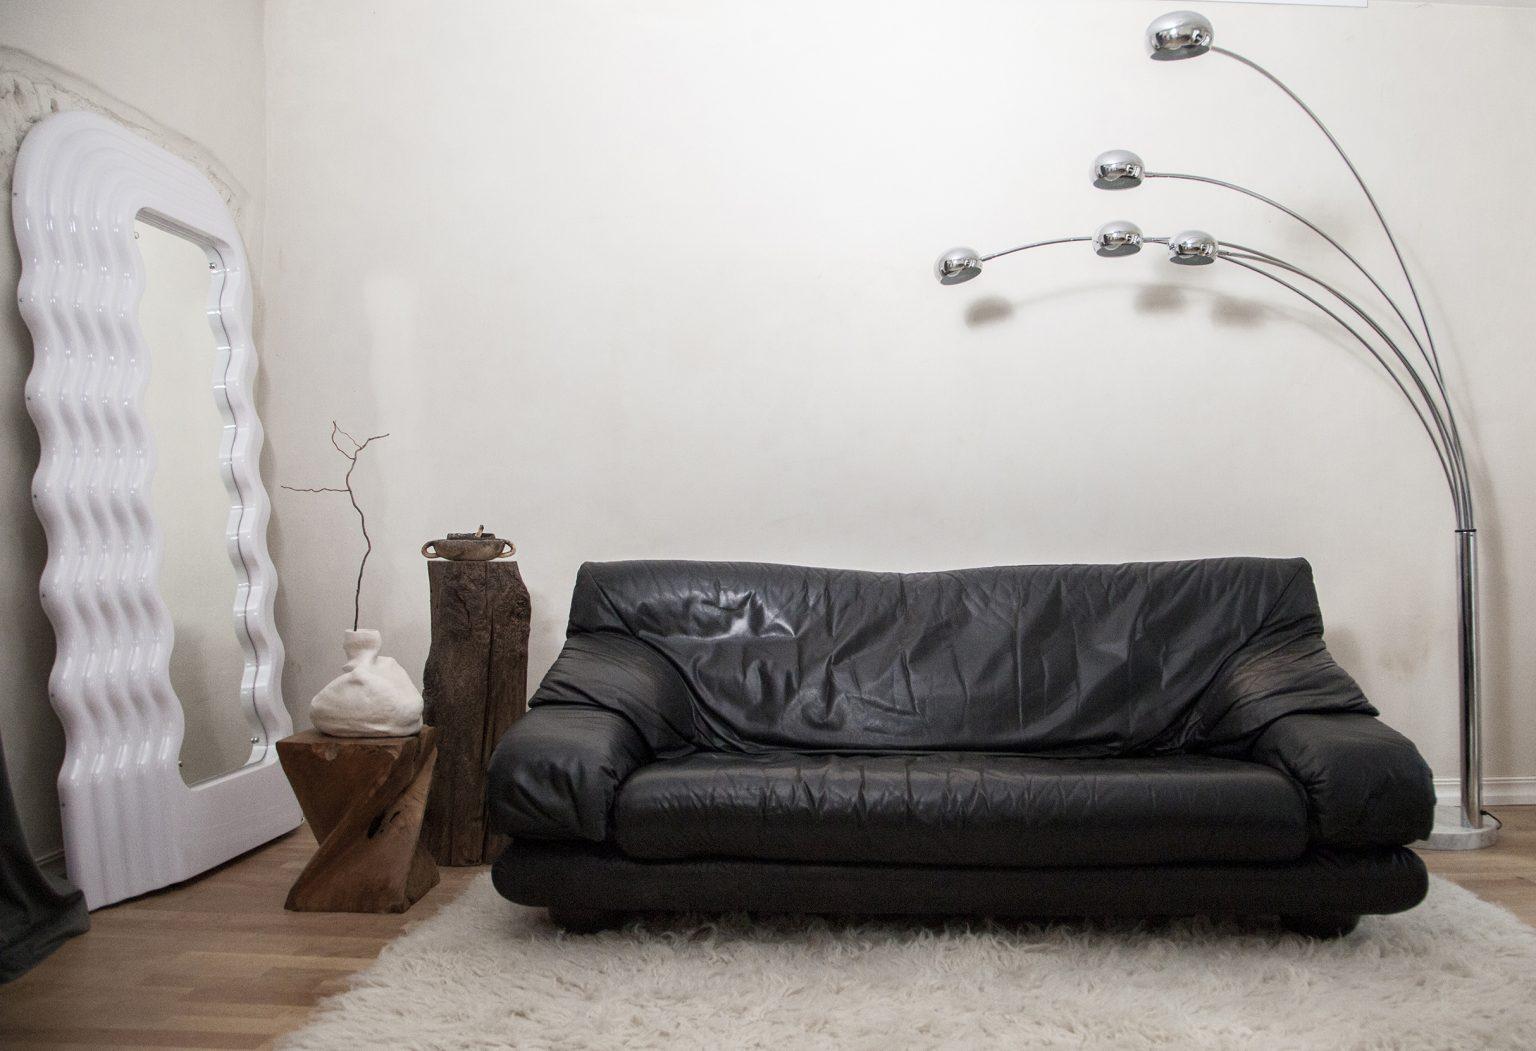 Canapé en cuir noir avec une belle patine.

Ce meuble moderne se caractérise par des lignes et des formes épurées, ainsi que par l'accent mis sur la fonction. Le dossier est réglable et peut être fixé dans trois positions différentes. 

Le canapé